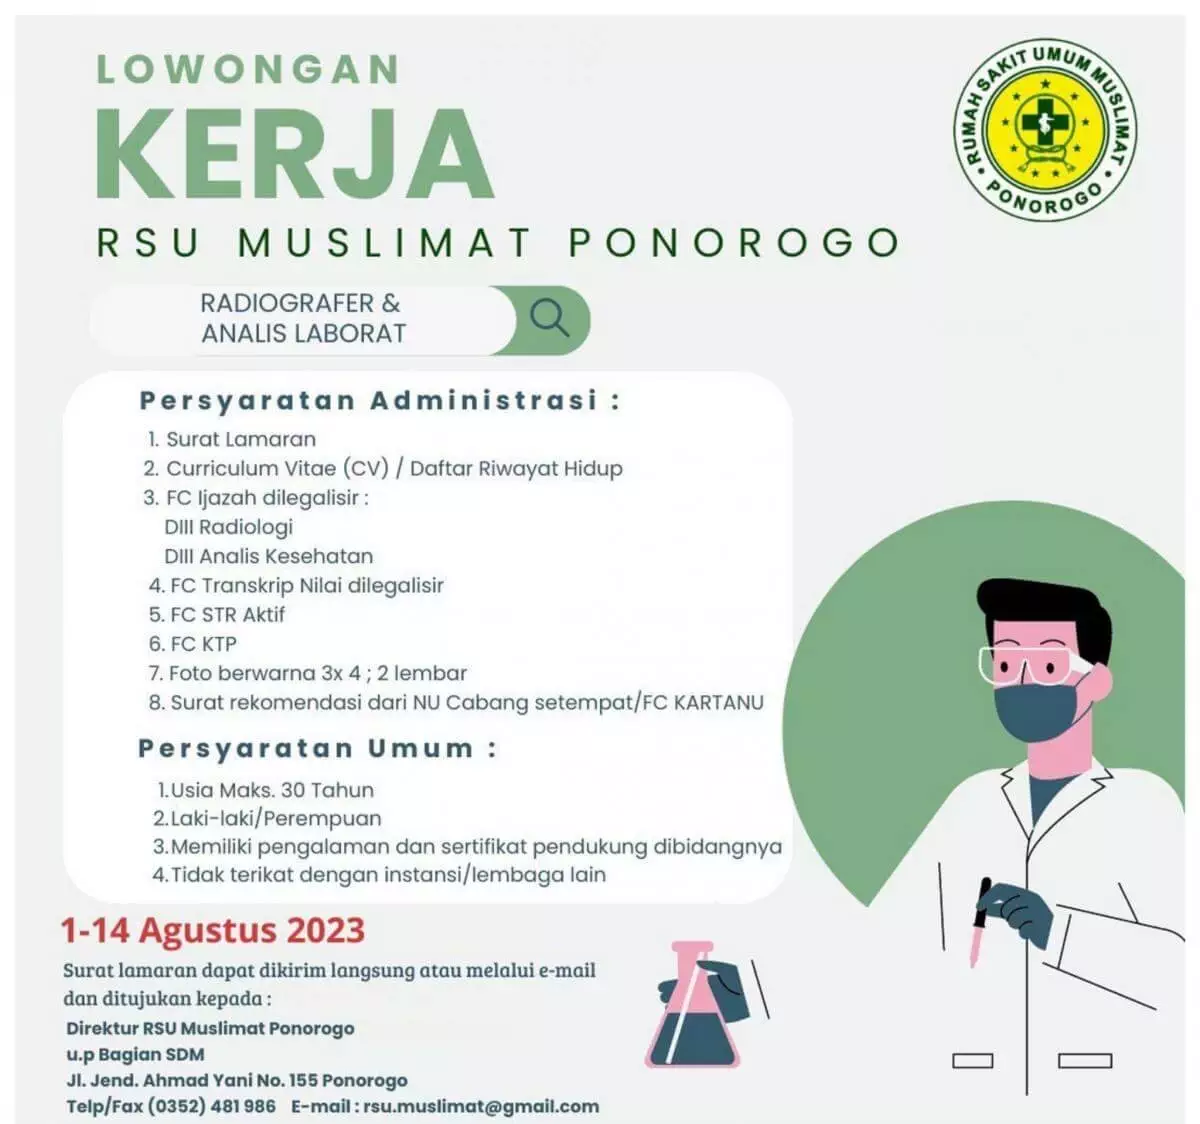 Lowongan Kerja Radiografer & Analis Laboratorium di RSU Muslimat Ponorogo